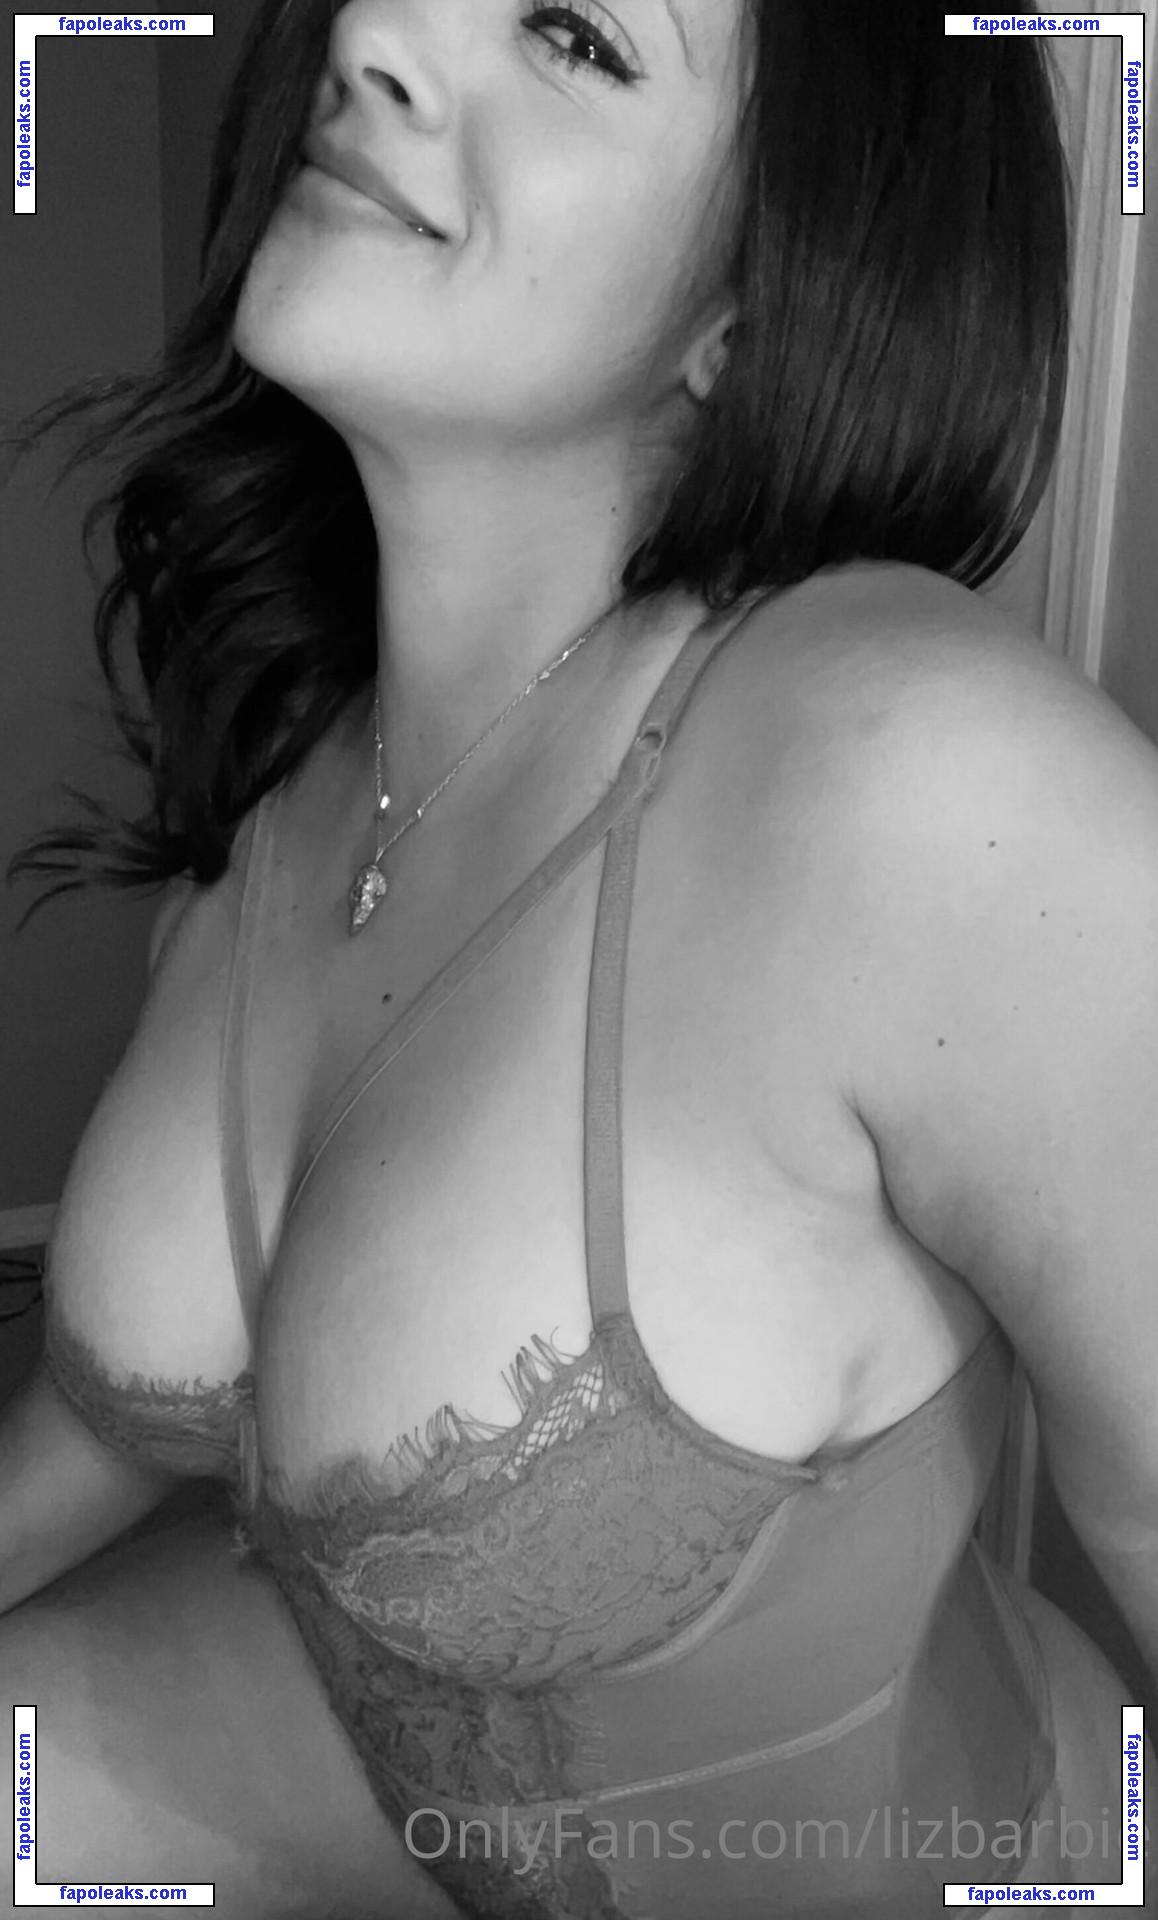 Elizabeth Retana / barbie915 / elizabeth32retana nude photo #0054 from OnlyFans